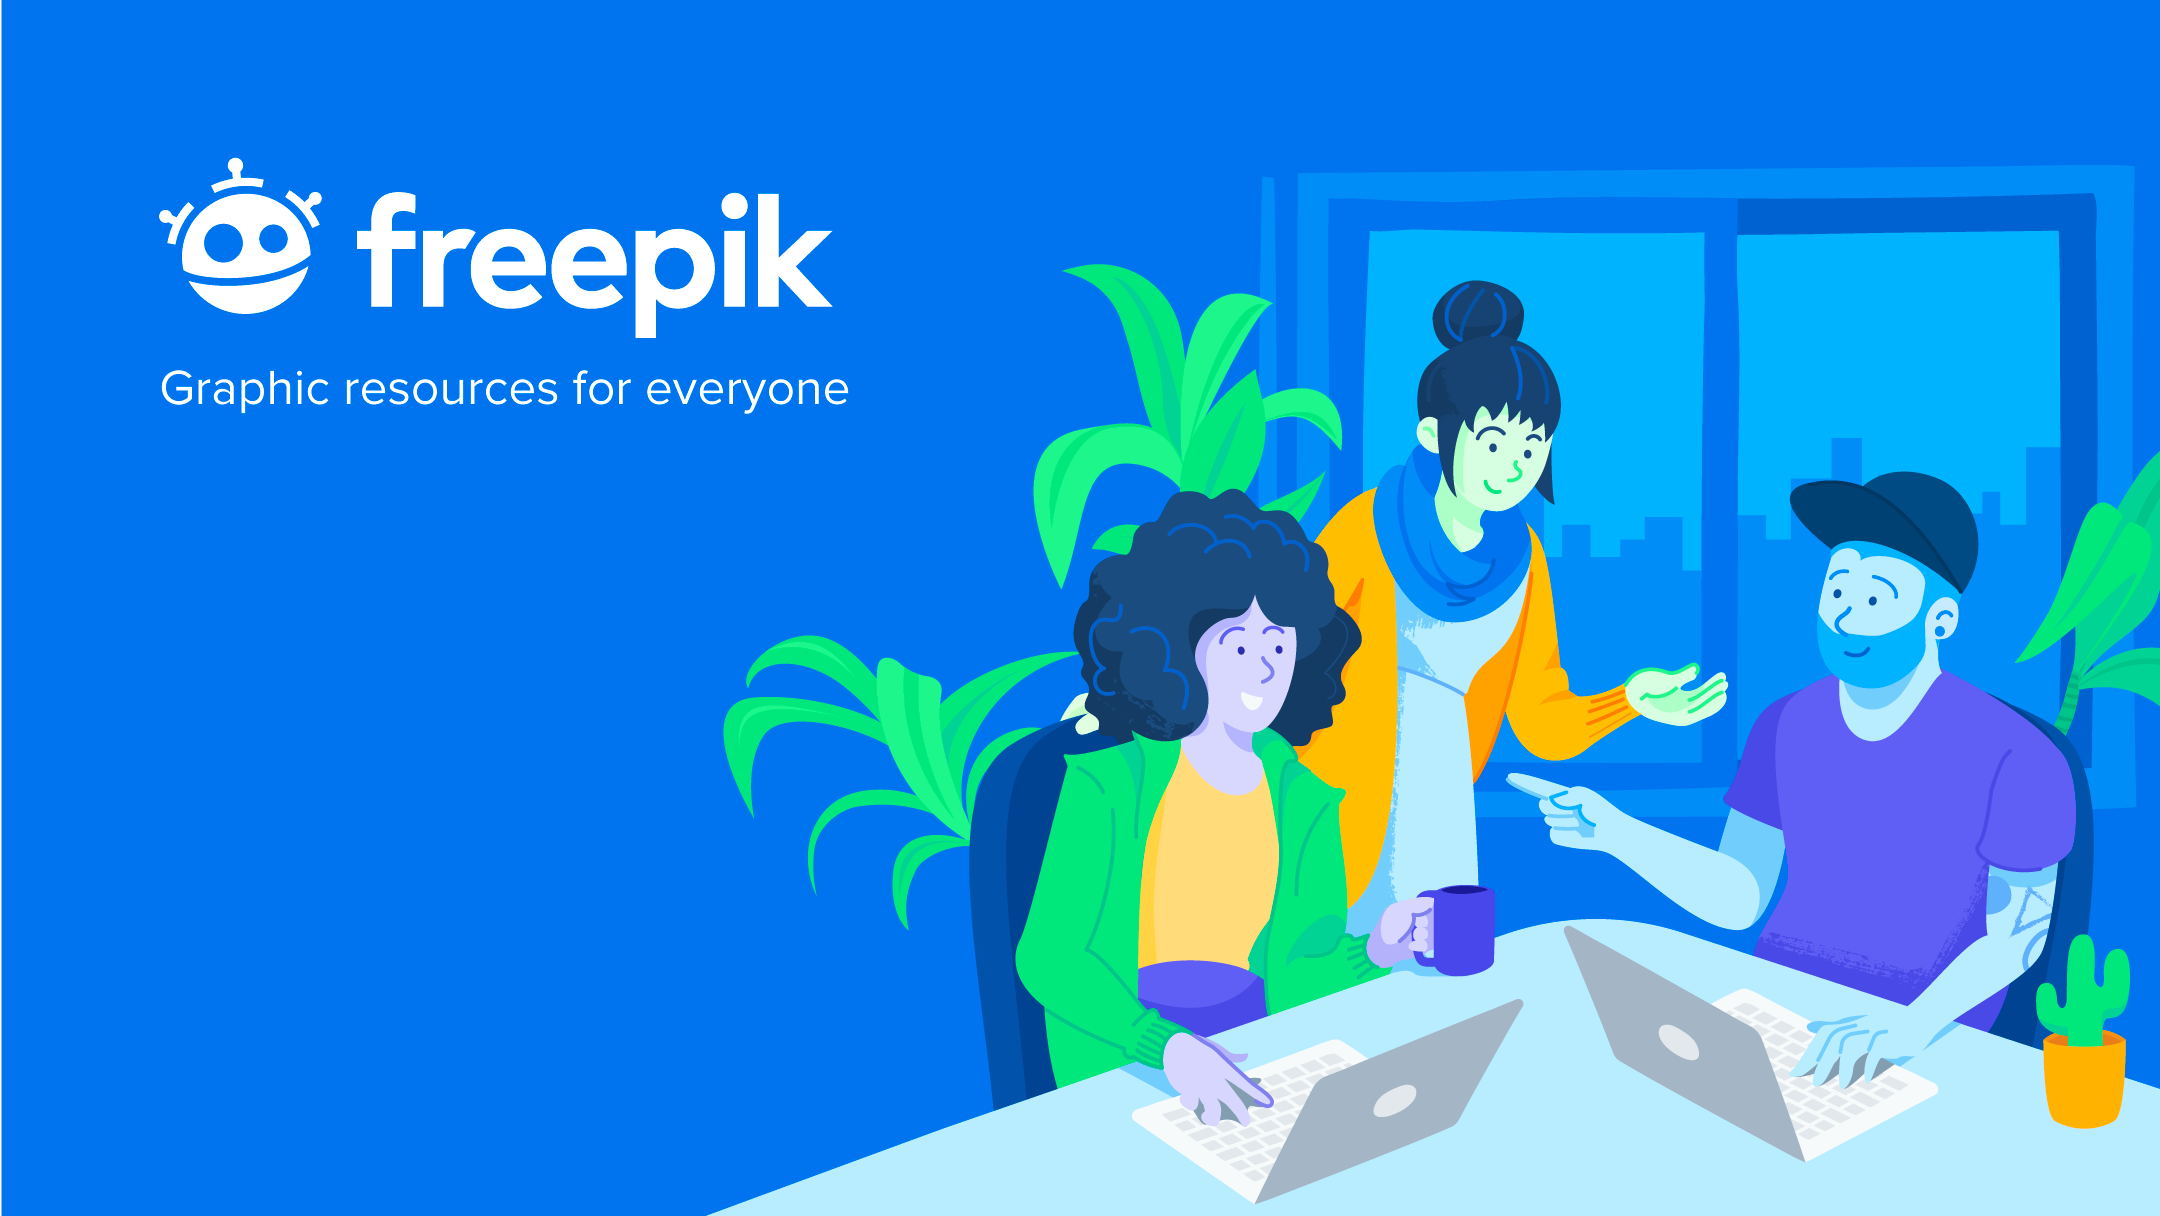 Freepik là một phần mềm như một nền tảng dịch vụ